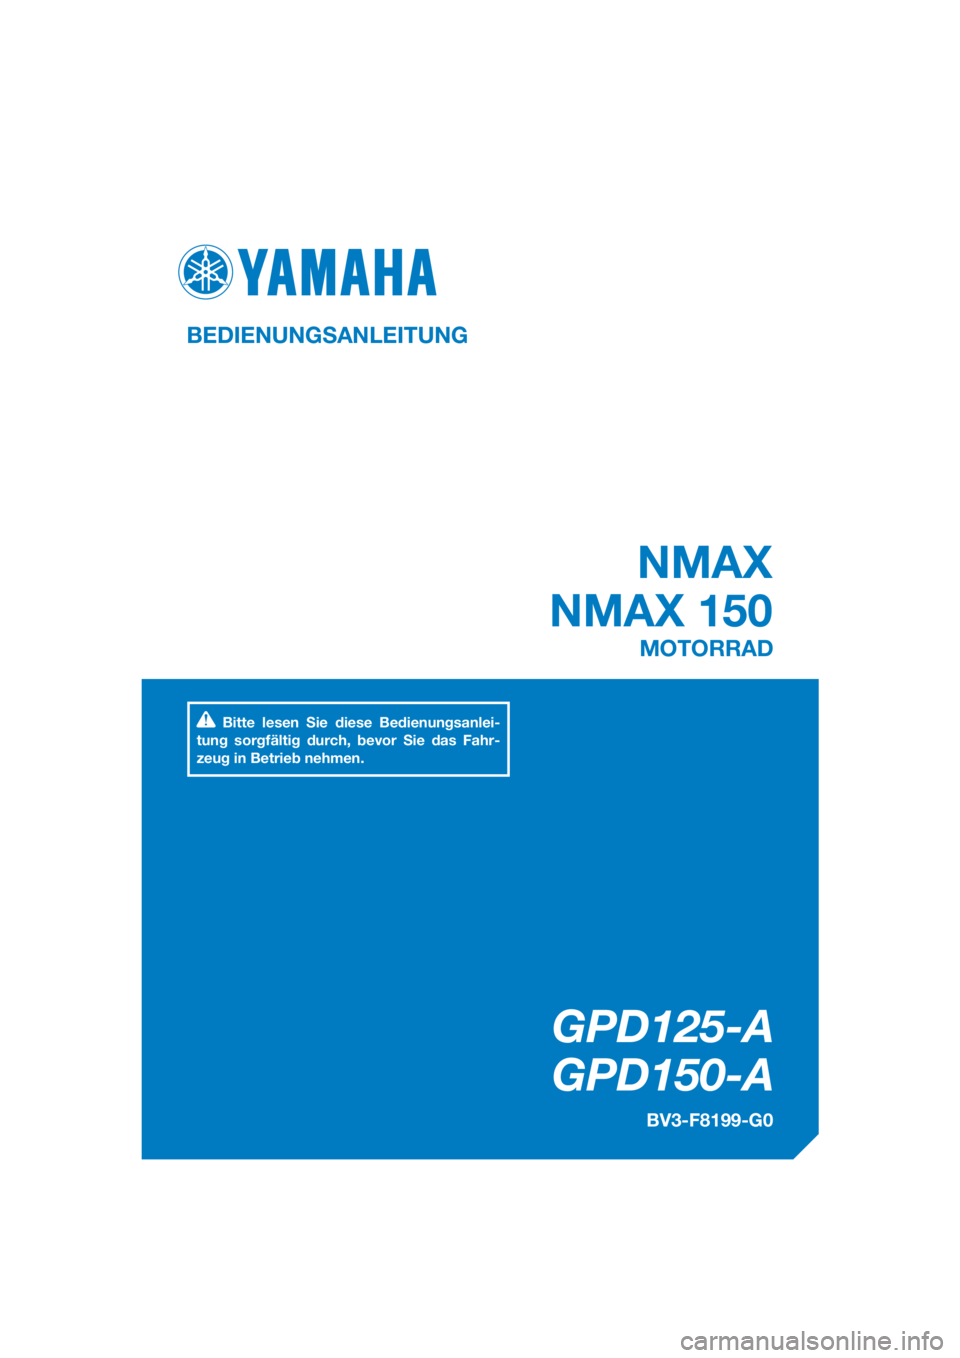 YAMAHA NMAX 150 2018  Betriebsanleitungen (in German) DIC183
GPD125-A
GPD150-A
NMAX
NMAX 150
BEDIENUNGSANLEITUNG
BV3-F8199-G0
MOTORRAD
Bitte lesen Sie diese Bedienungsanlei-
tung sorgfältig durch, bevor Sie das Fahr-
zeug in Betrieb nehmen.
[German  (G)